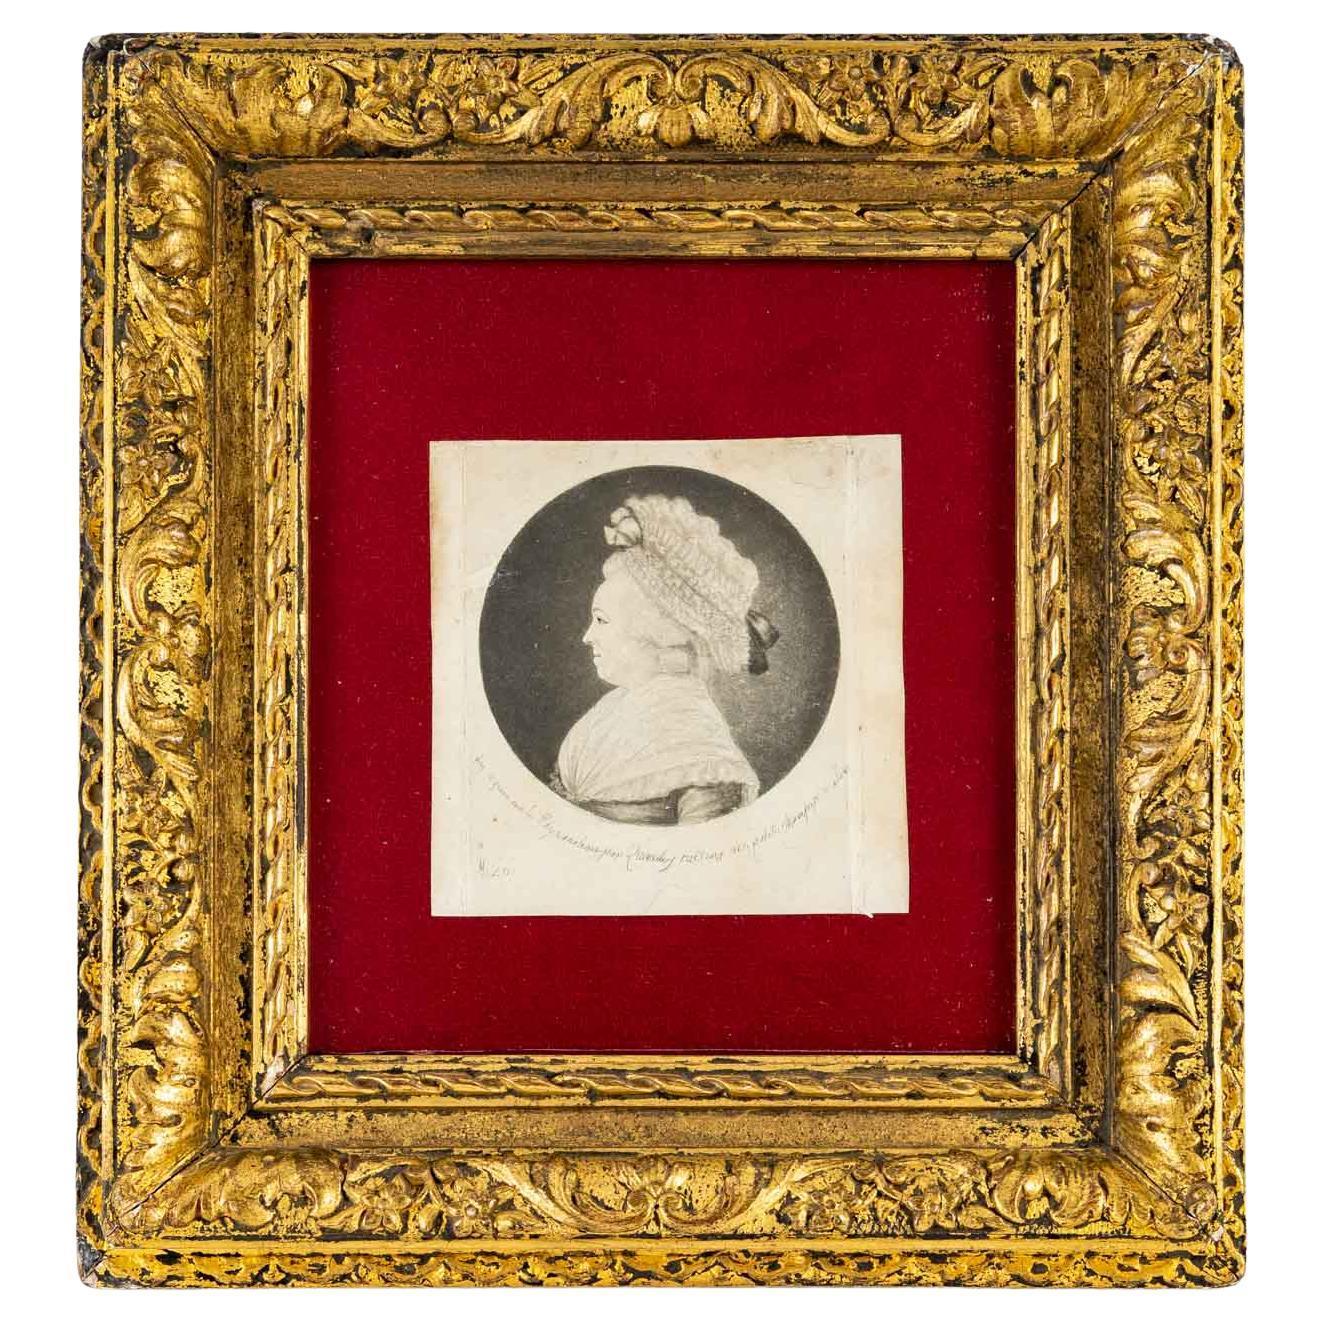 Small Portrait of Madame de Fougeroux de Bondaroy, physiognomy of Edme Quenedey des Riceys (1756 - 1830).
Measures: H: 22 cm, W: 21 cm, D: 2 cm.